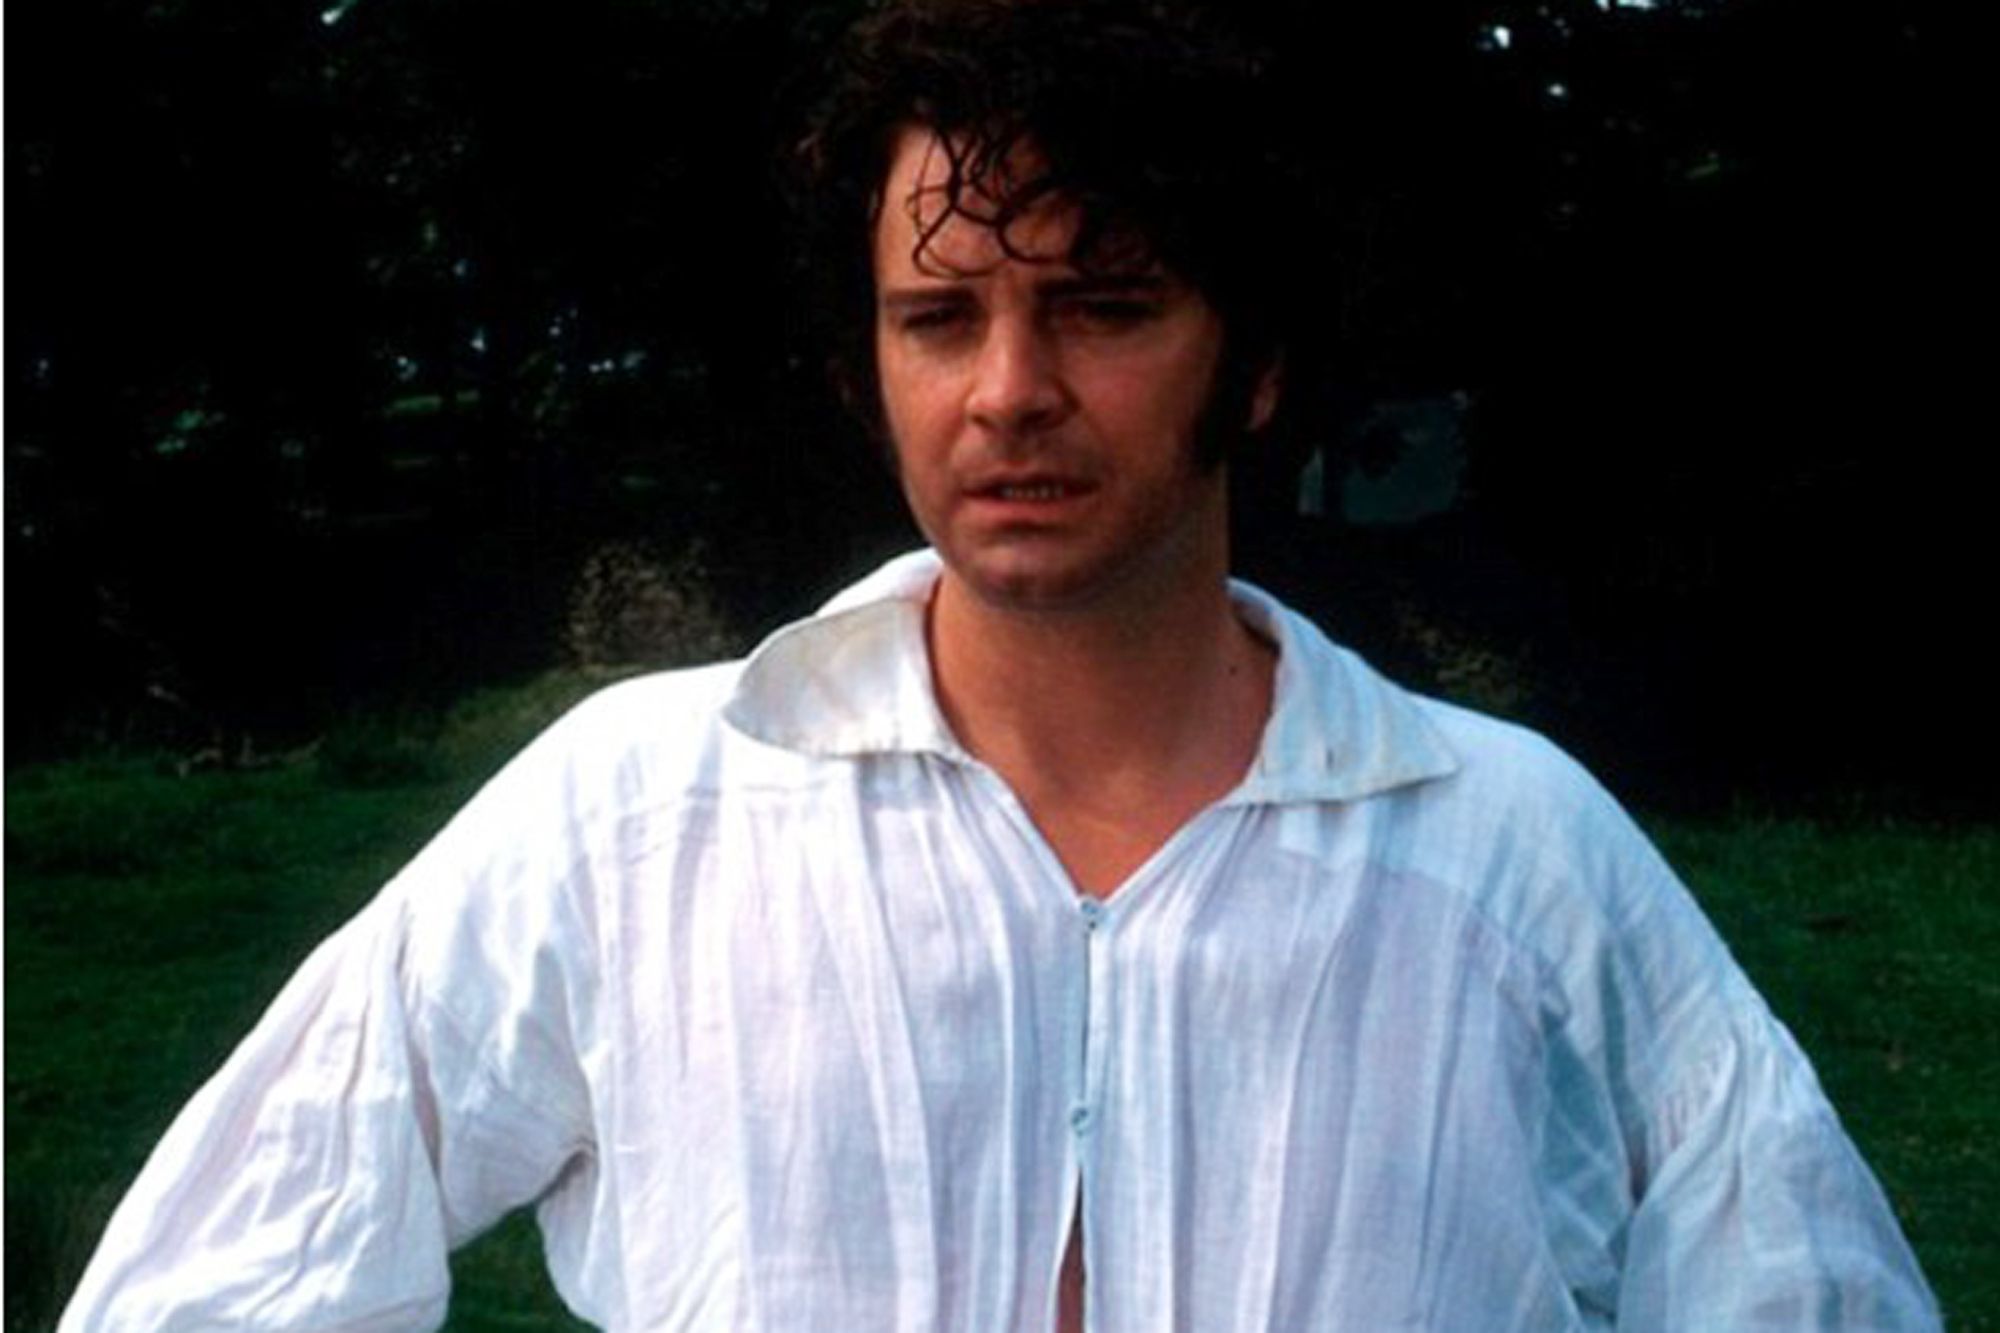 Gerçək cənab Darcy'nin Colin Firth kimi görünməyəcəyini ortaya çıxardı